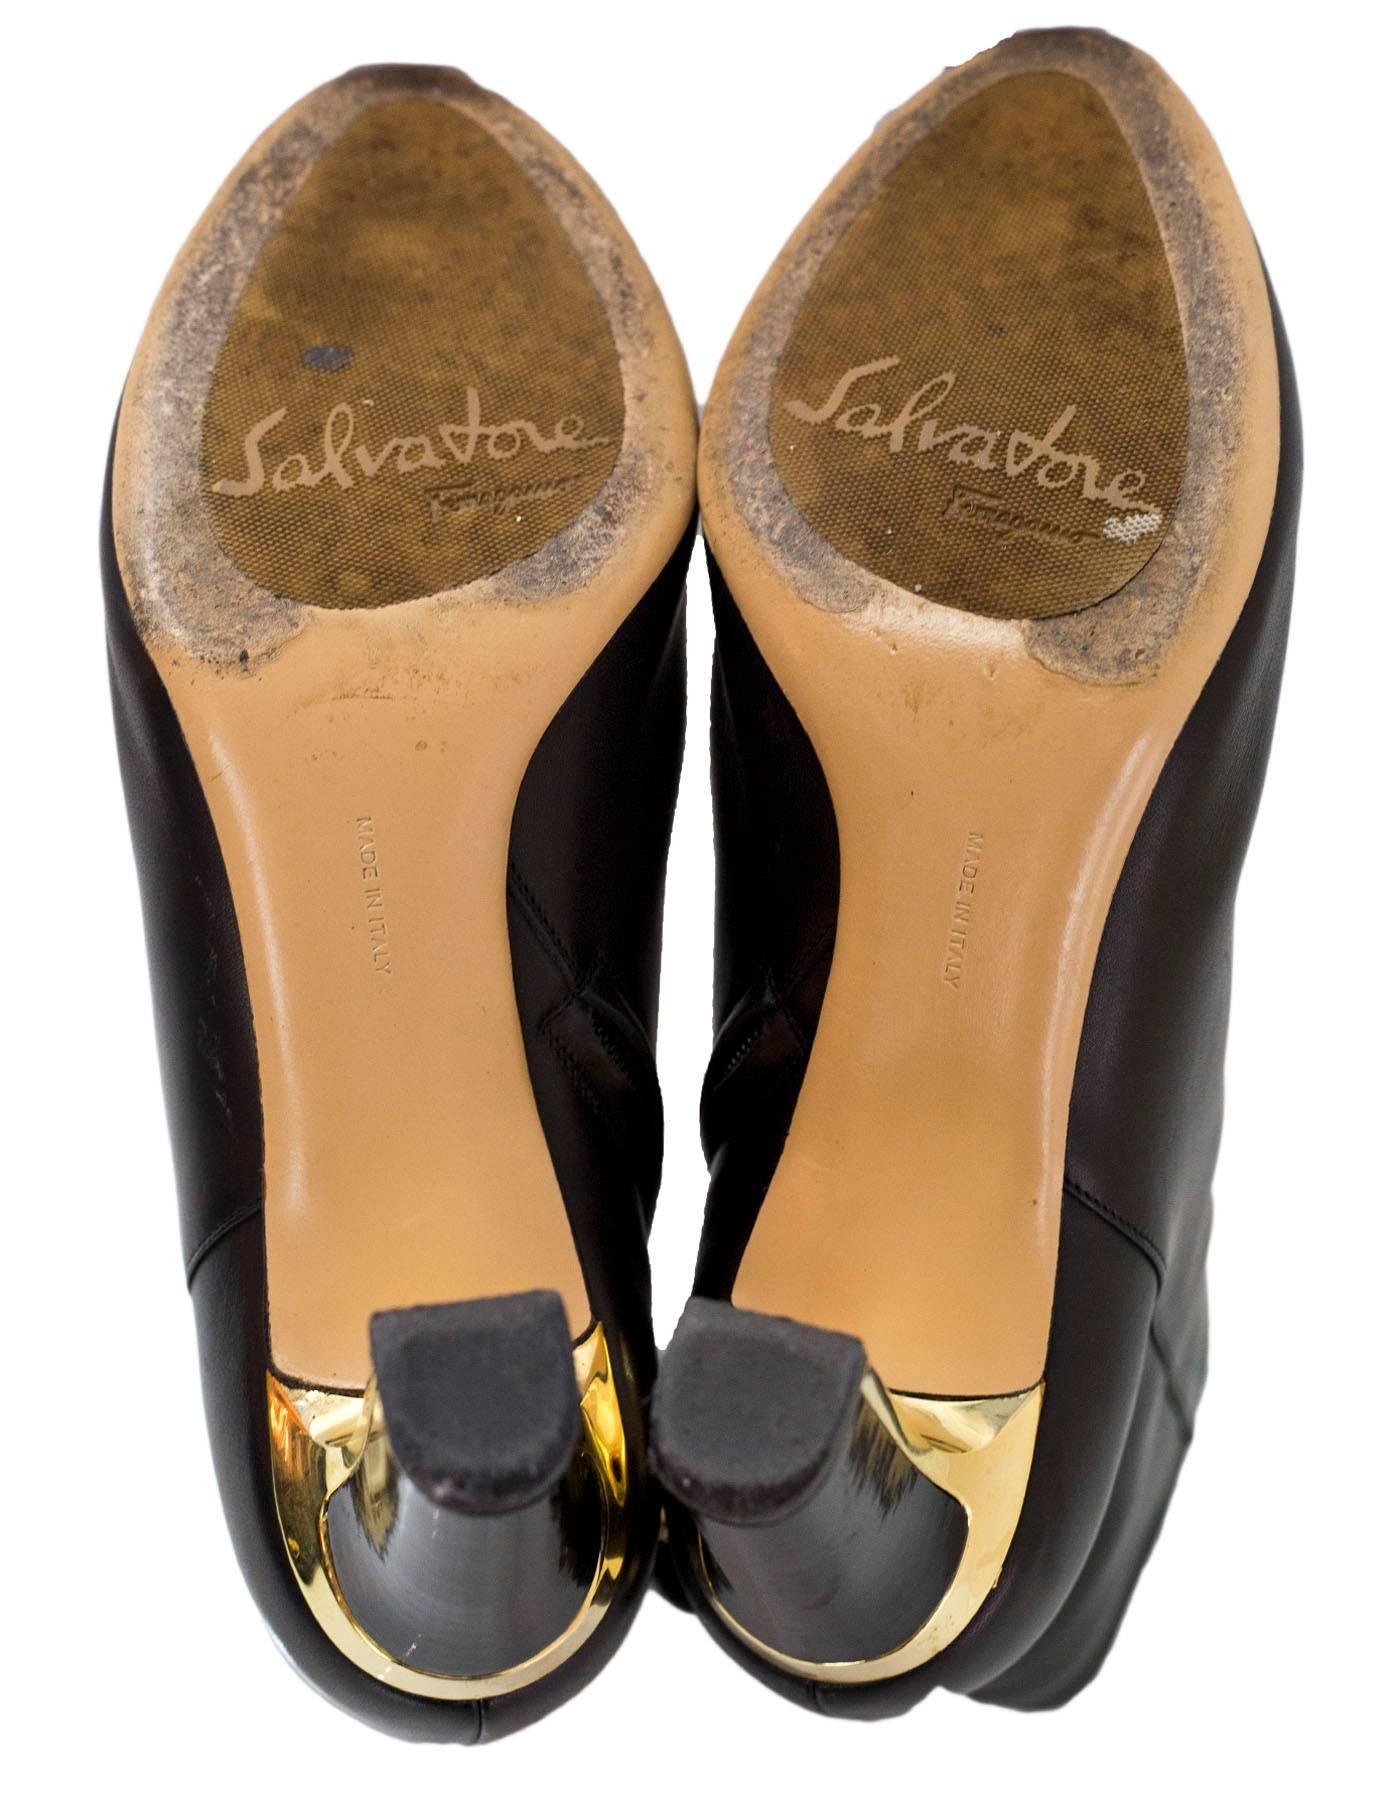 Women's Salvatore Ferragamo Black Leather Ankle Boots Sz 6